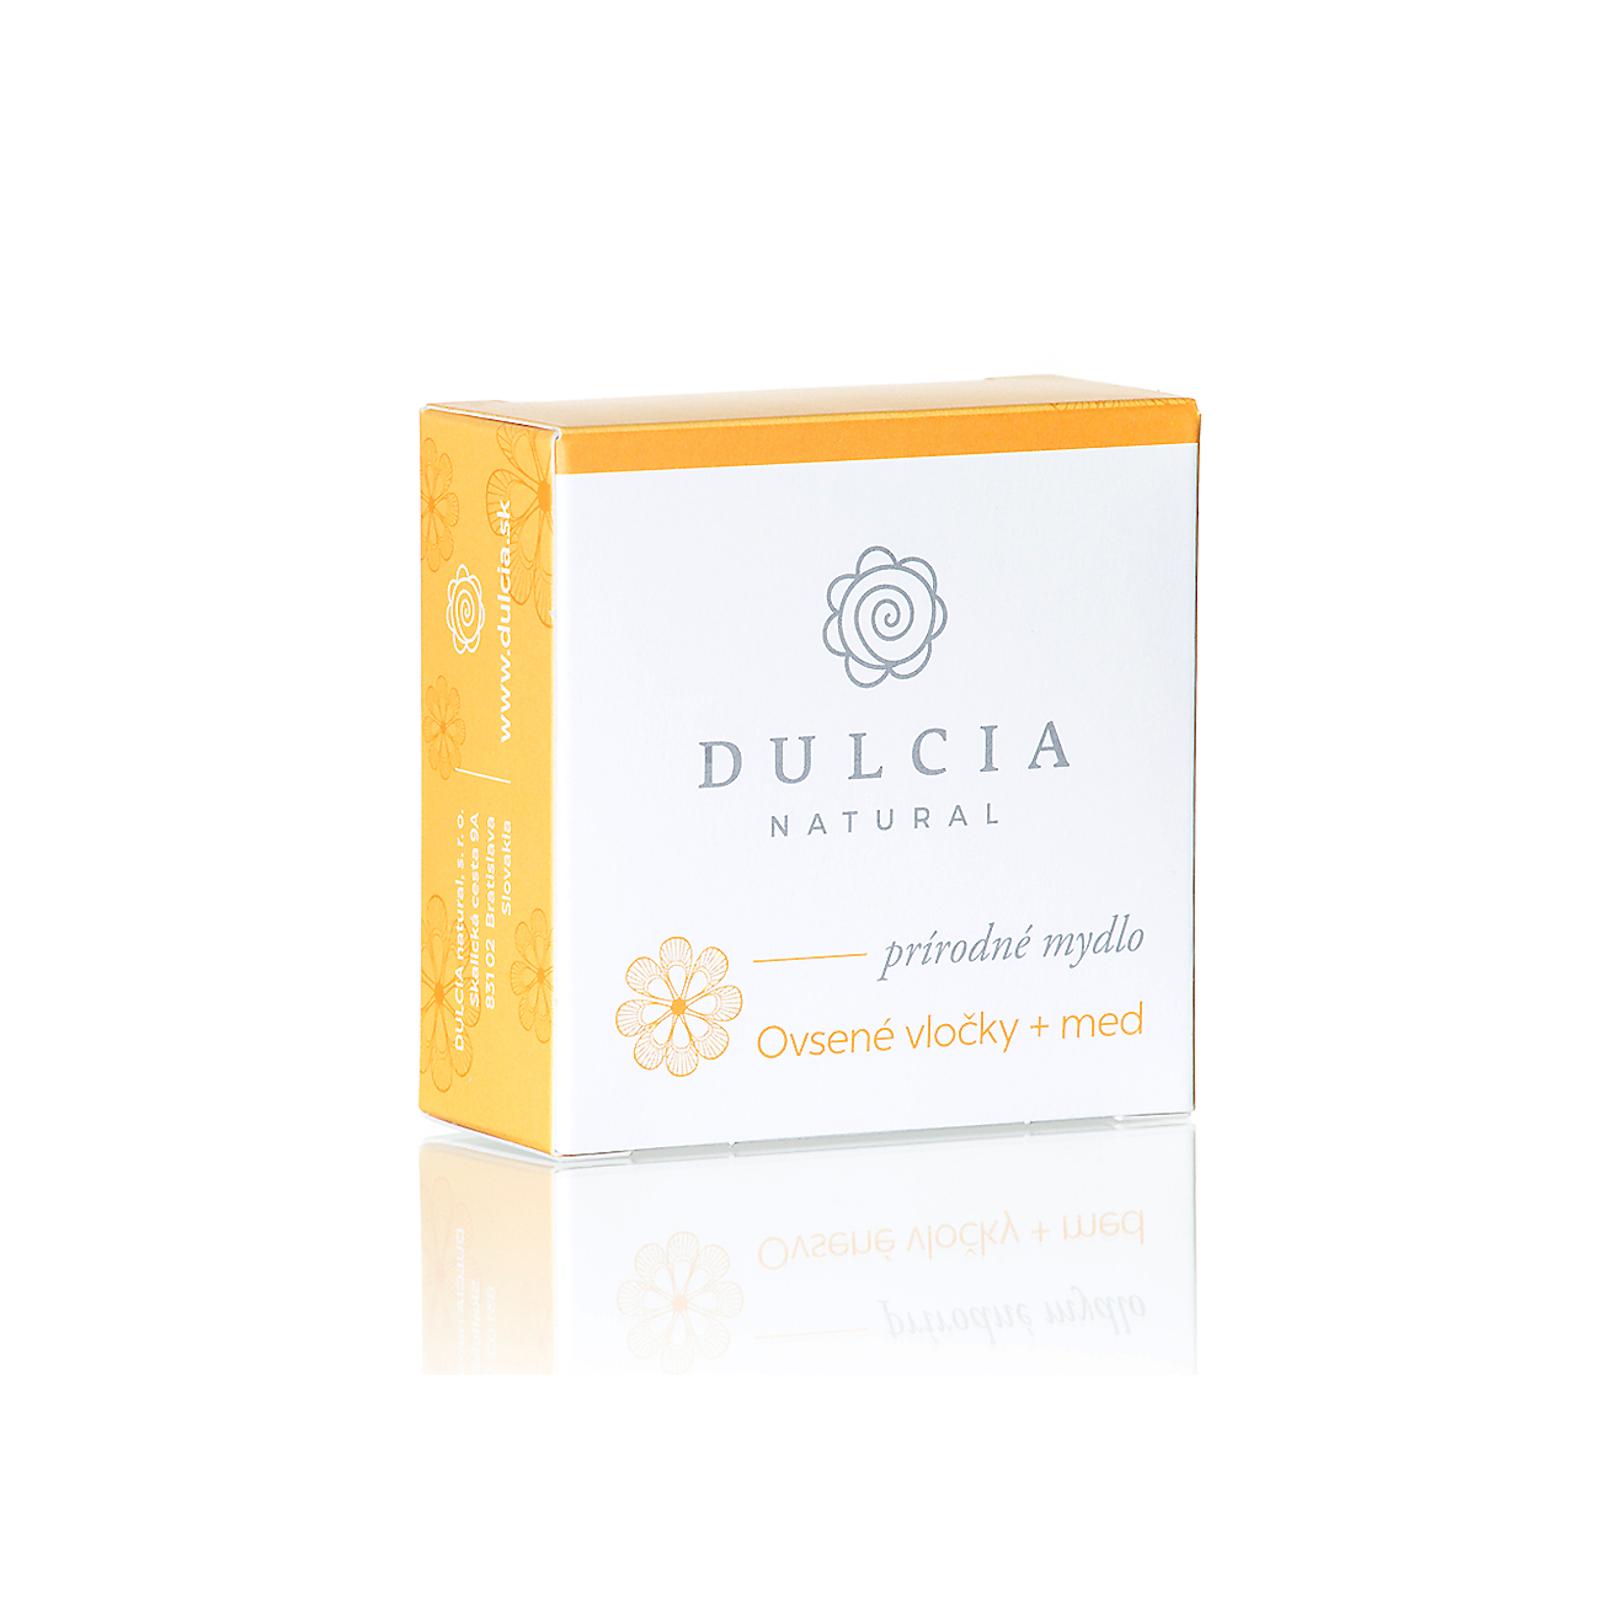 DULCIA natural Přírodní mýdlo ovesné vločky a med 95 g